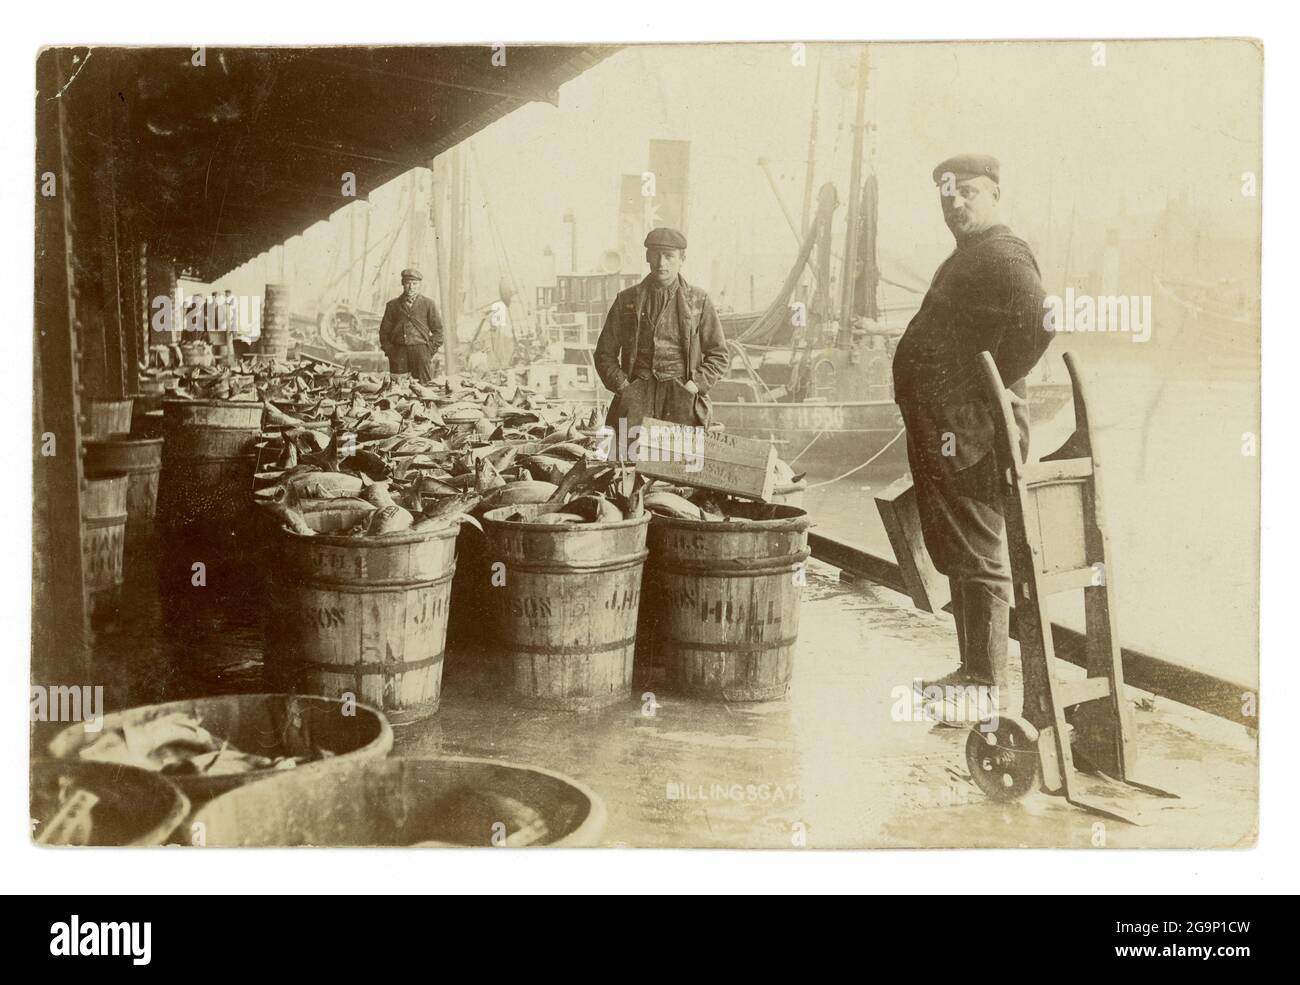 Image du début des années 1900 de pêcheurs au vieux marché aux poissons de Billingsgate, avec une énorme quantité de poisson dans des caisses, Londres, Royaume-Uni vers 1910 Banque D'Images